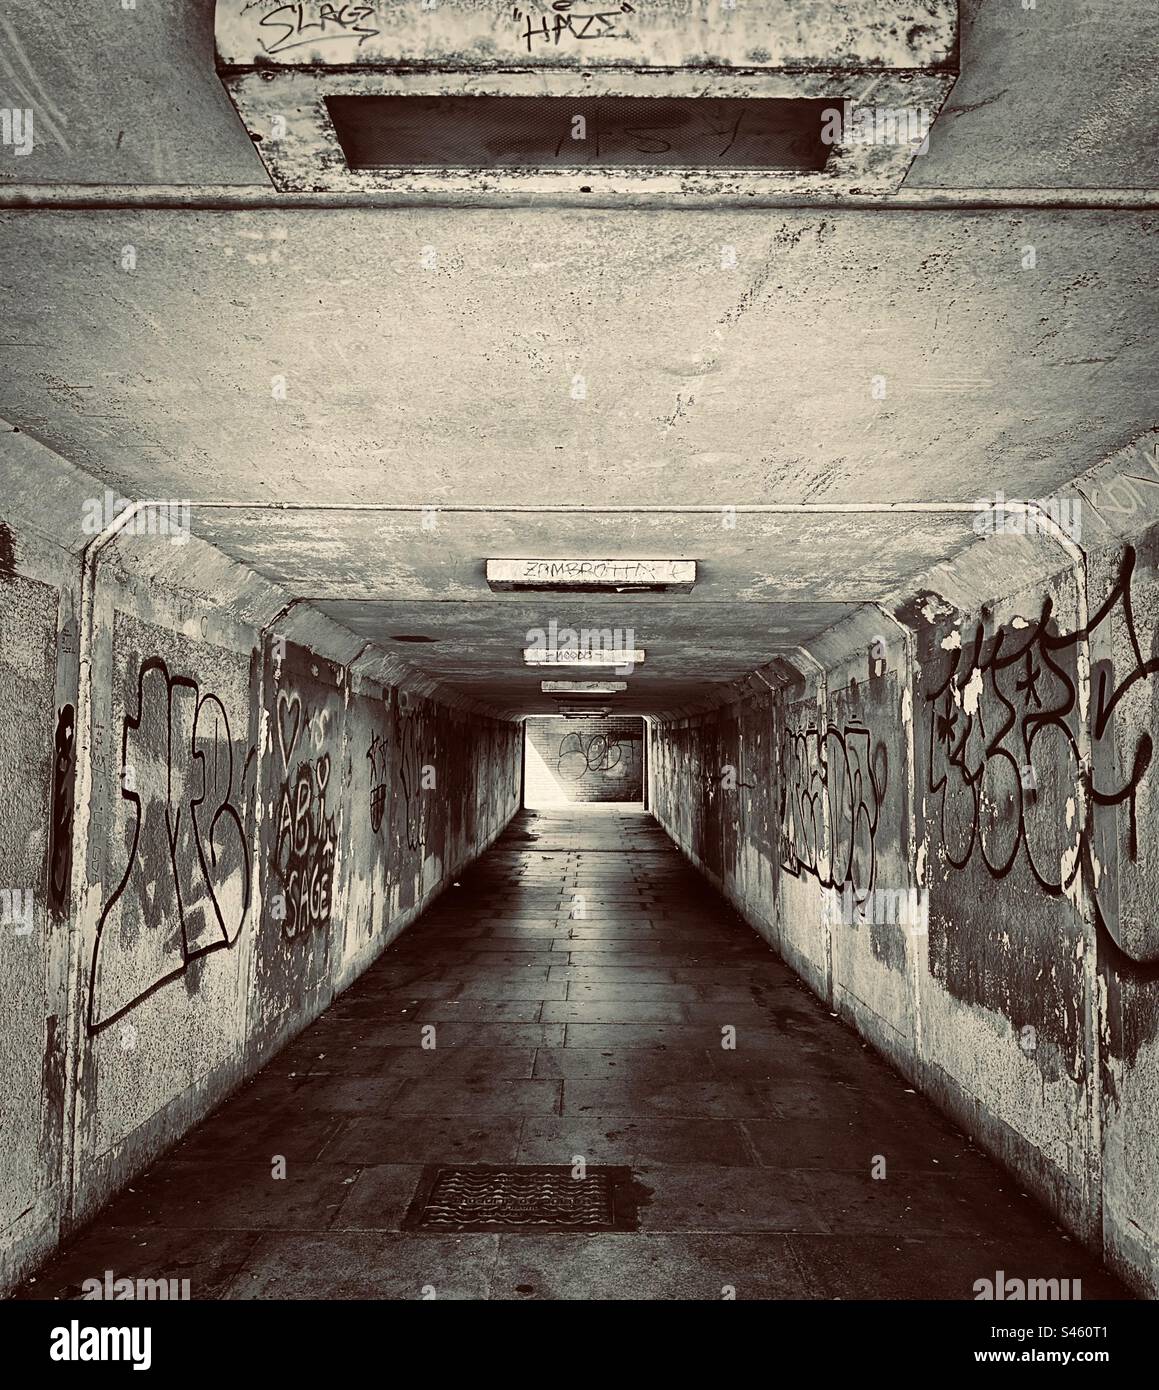 Eine U-Bahn sieht nicht einladend aus - dunkel, feucht und heruntergekommen. Graffiti-besprühte Wände befinden sich auf beiden Seiten des Gangs. (Schwarzweiß) Stockfoto